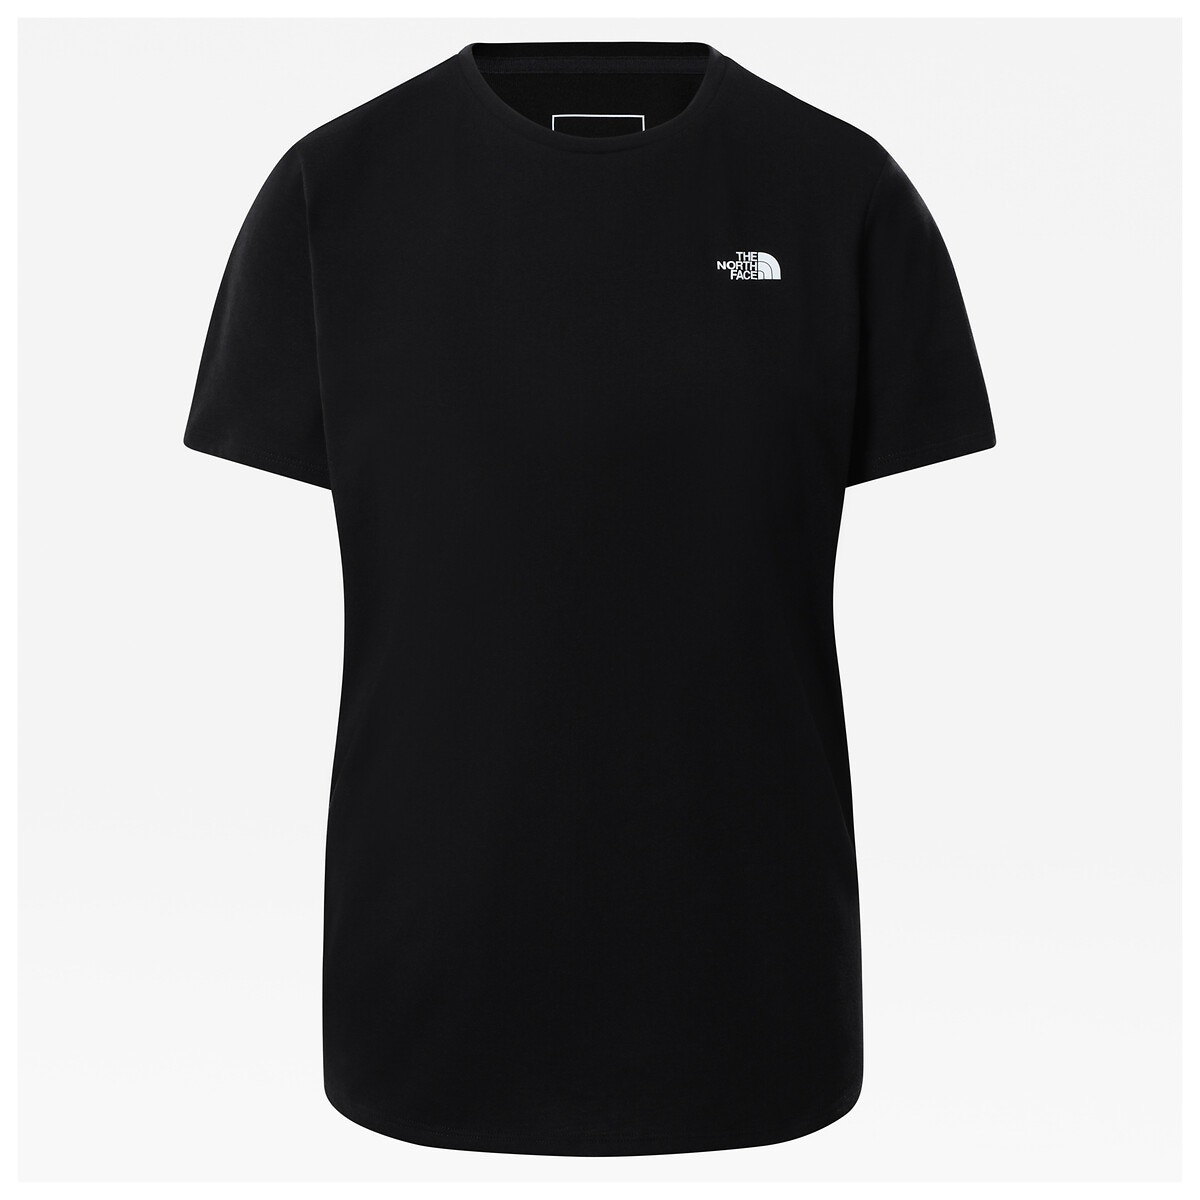 ΓΥΝΑΙΚΑ | Μπλούζες & Πουκάμισα | T-shirts Κοντομάνικο T-shirt με λογότυπο μπροστά